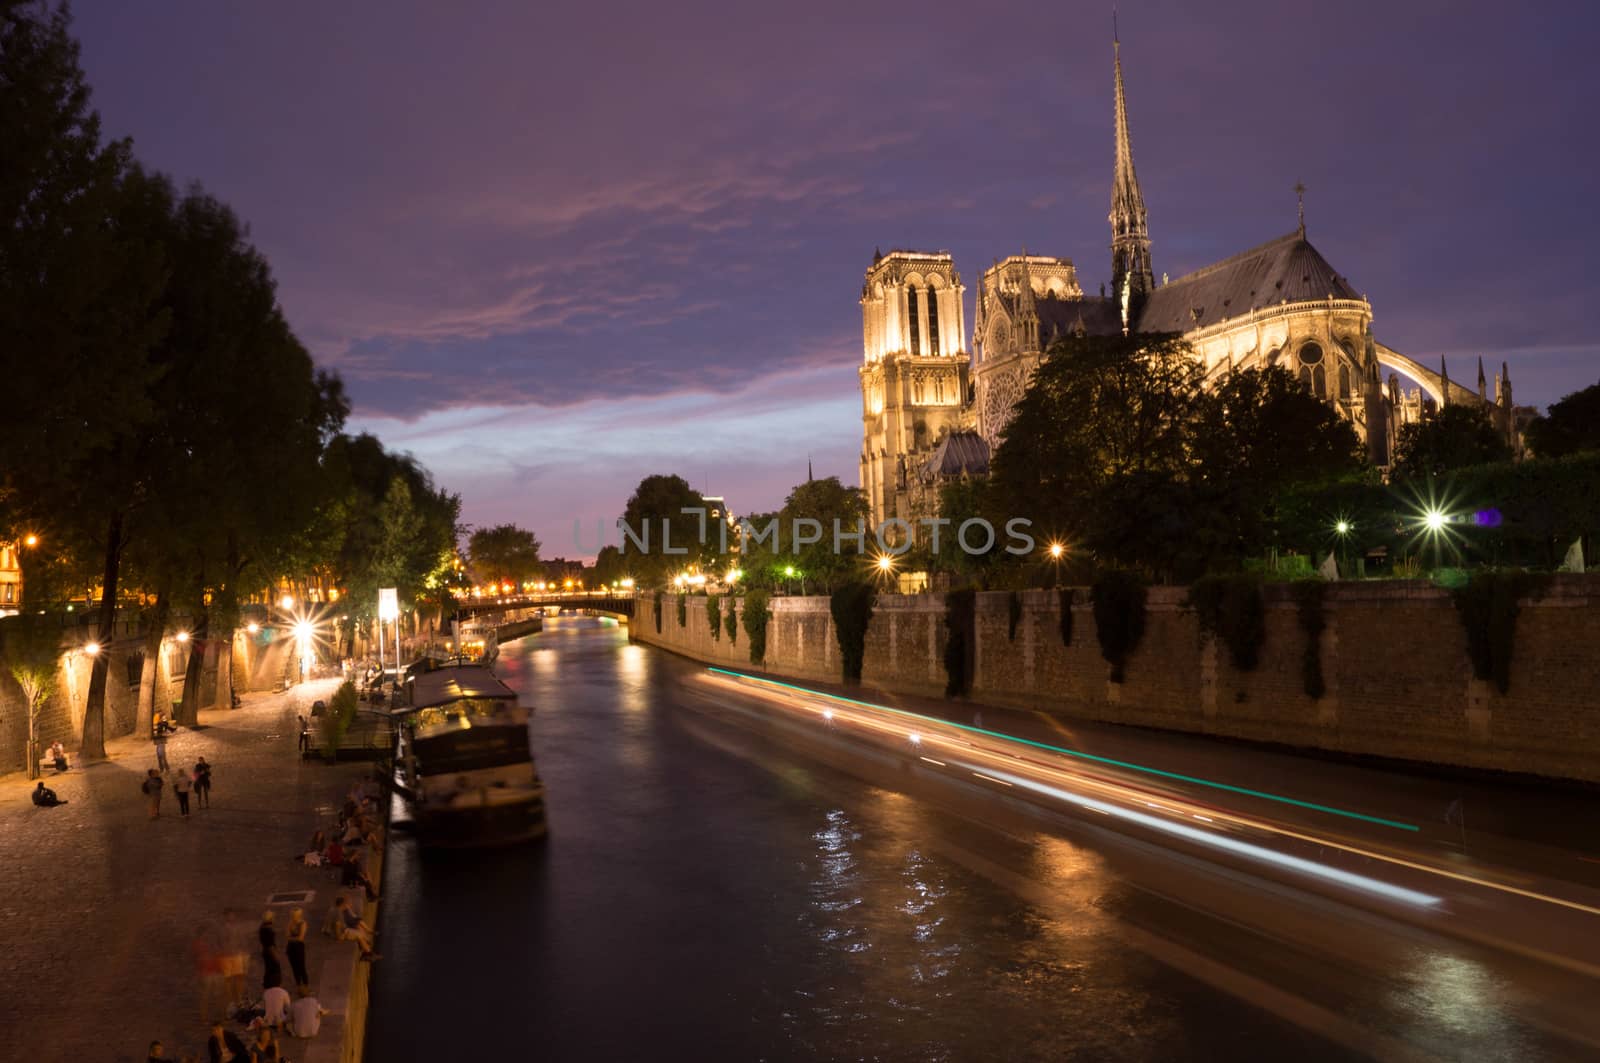 Peniche boats passing by Notre Dame de Paris cathedral